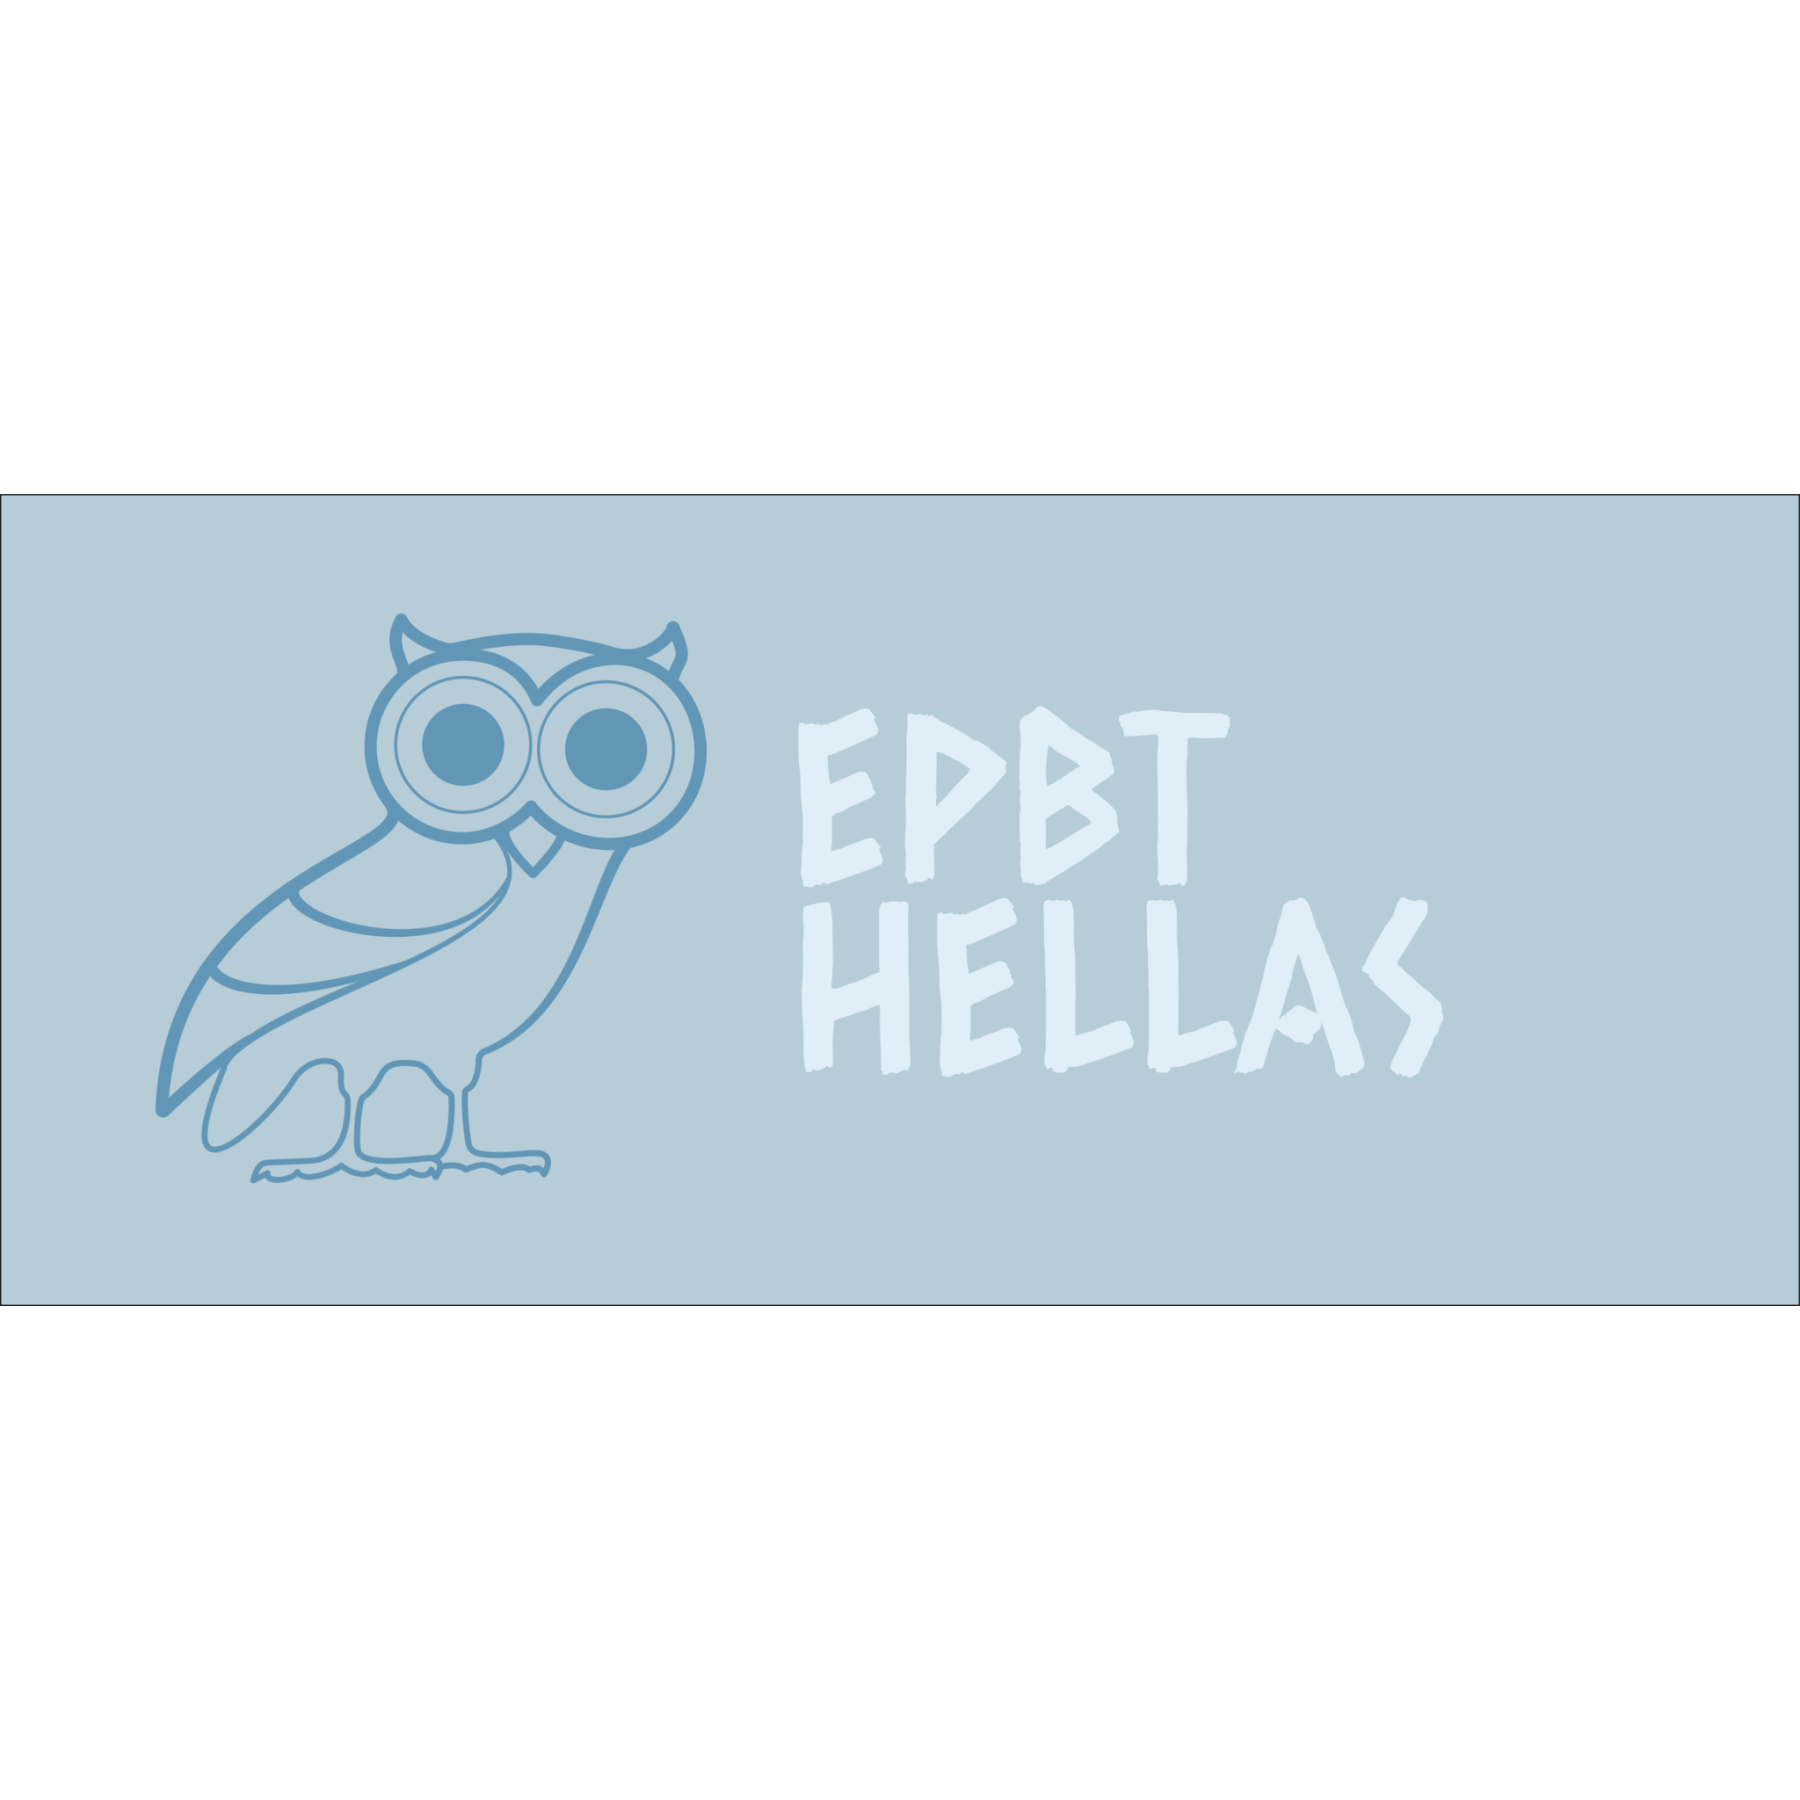 Group-Buy ePBT Hellas